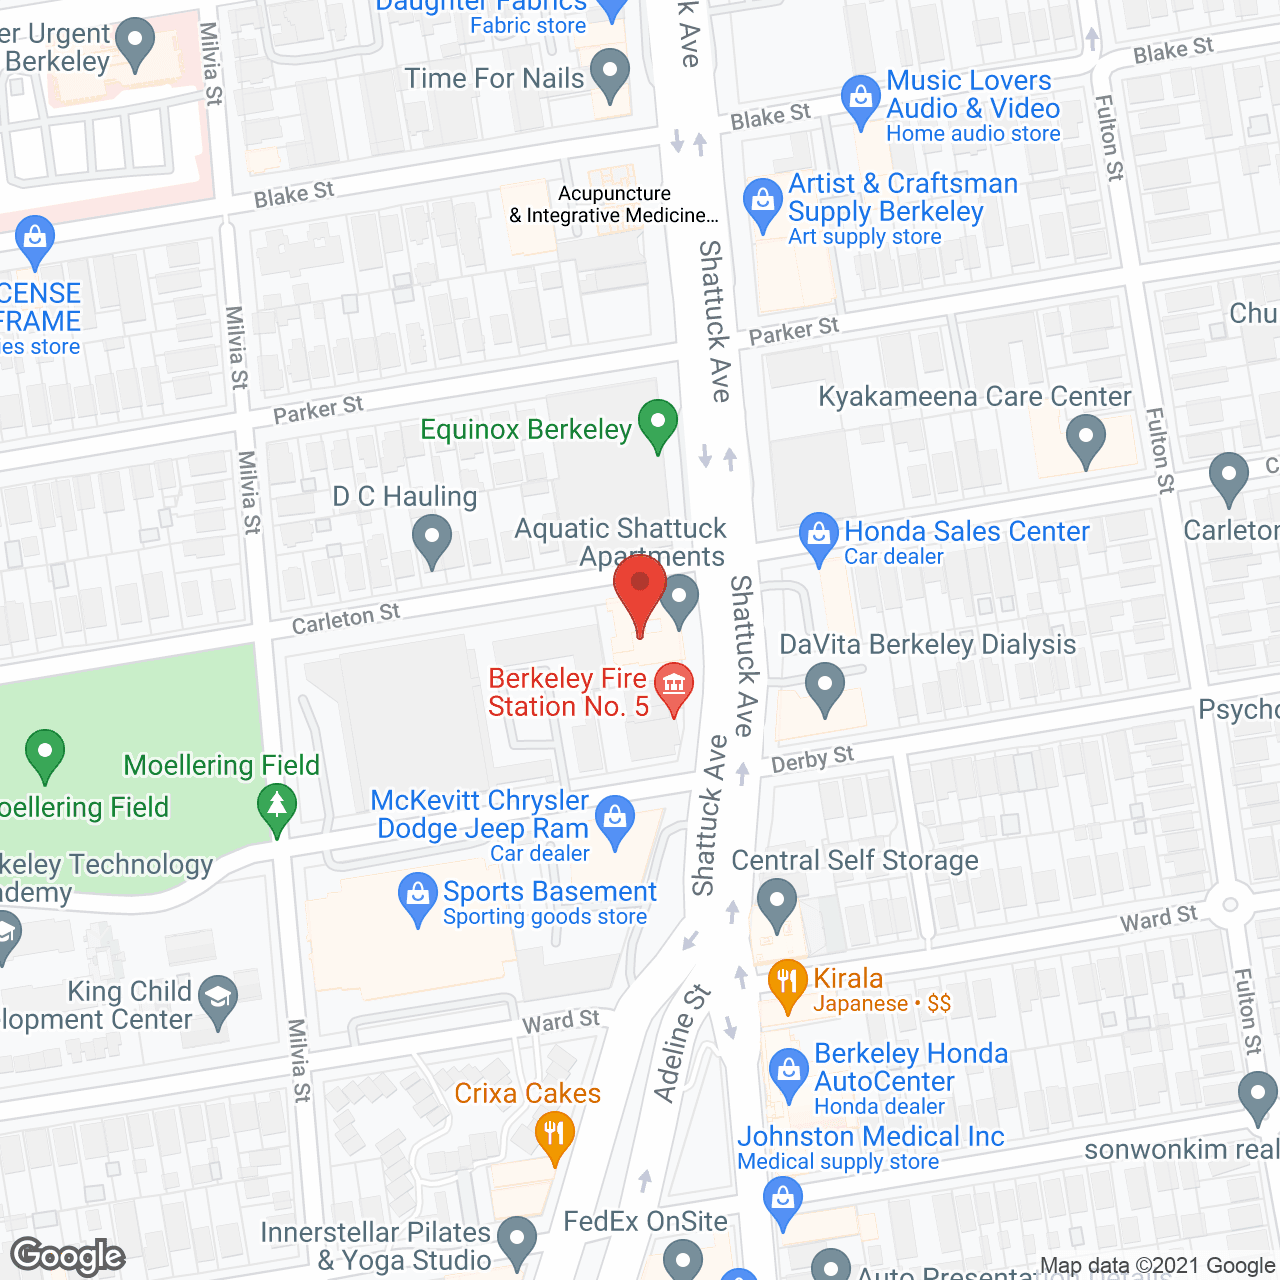 Berkeley Springs Manor in google map